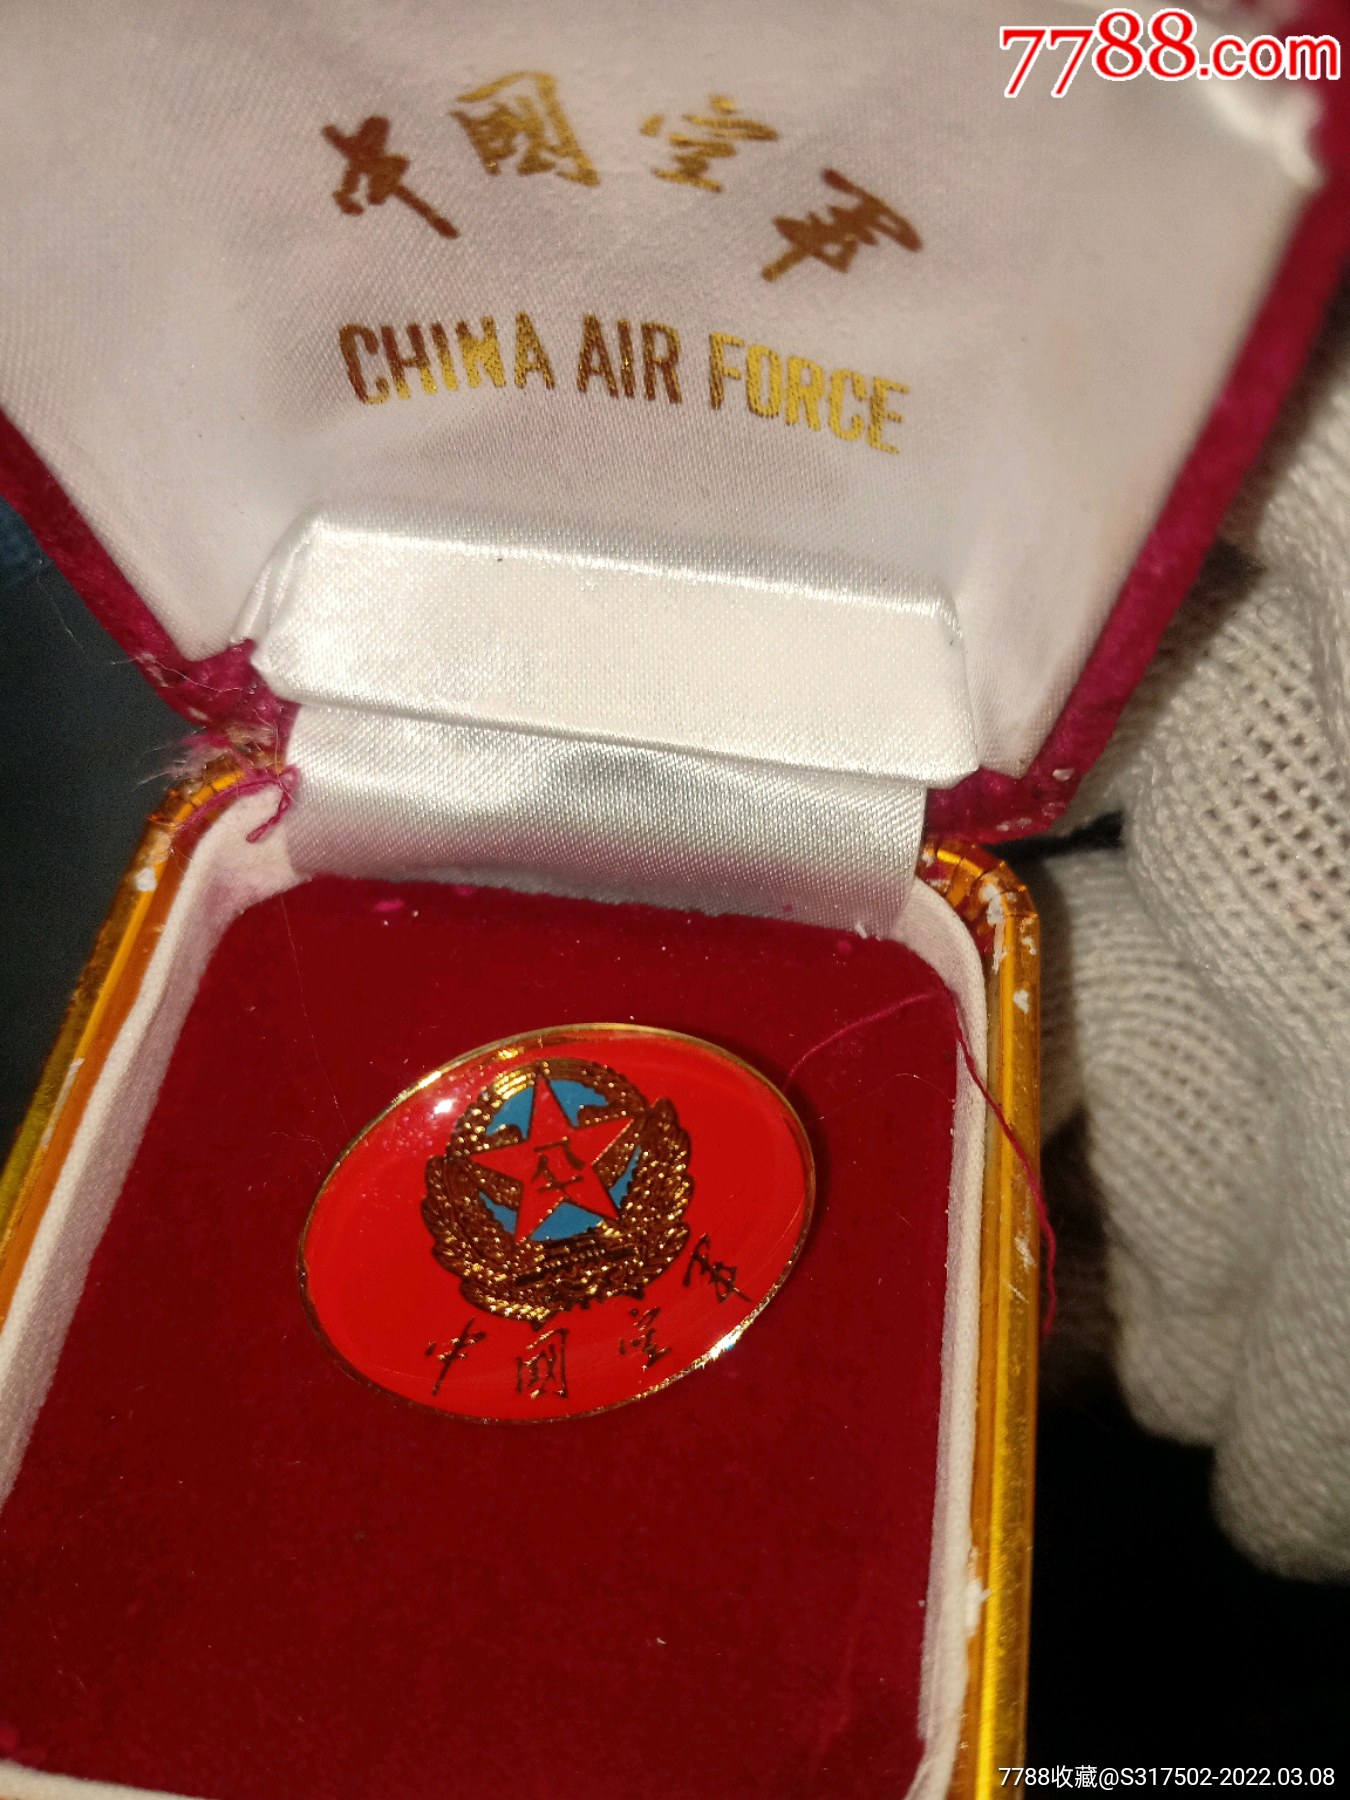 中国空军雷达兵徽章图片